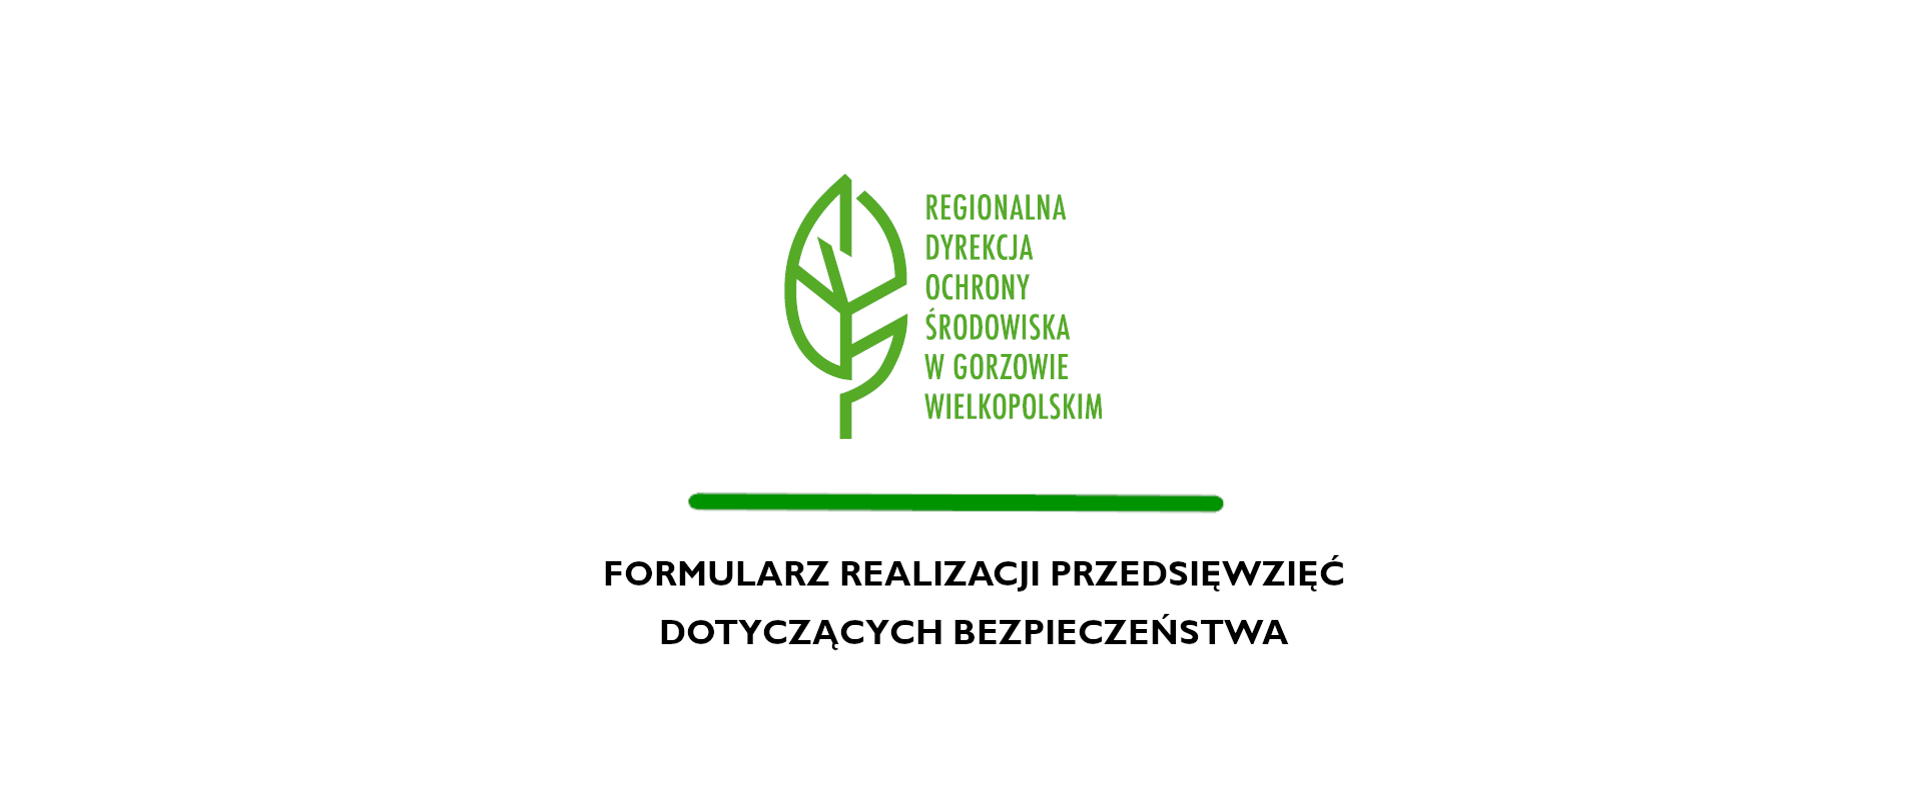 Na białym tle zielony liść i napis Regionalna Dyrekcja Ochrony Środowiska w Gorzowie Wielkopolskim. Zielona poprzeczna linia, pod nią napis Formularz realizacji przedsięwzięć dotyczących bezpieczeństwa